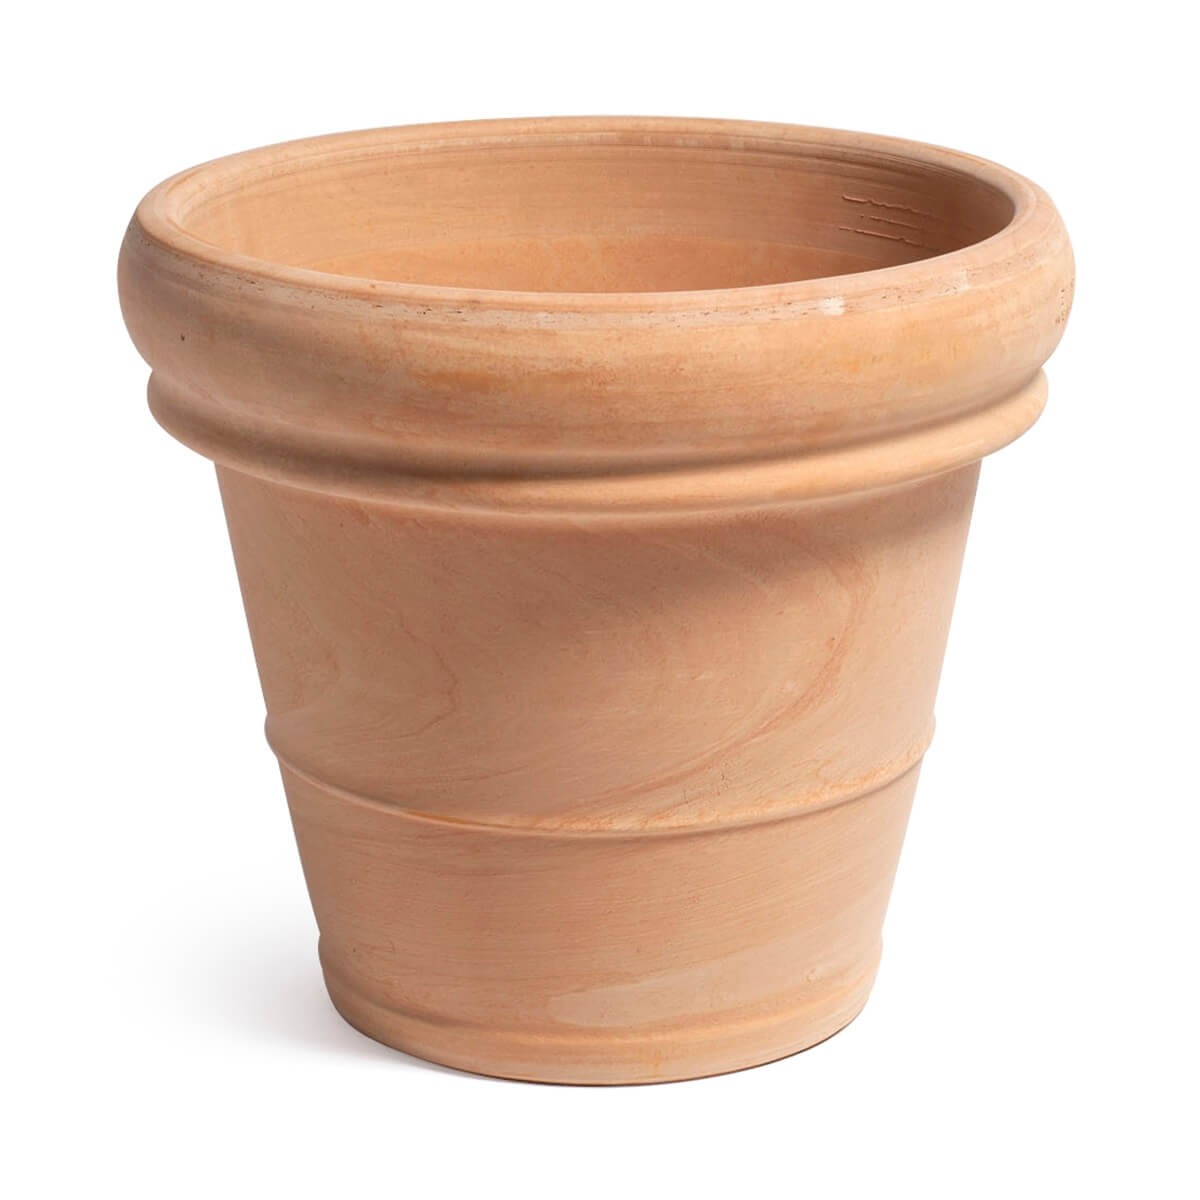 Antique Style Pot